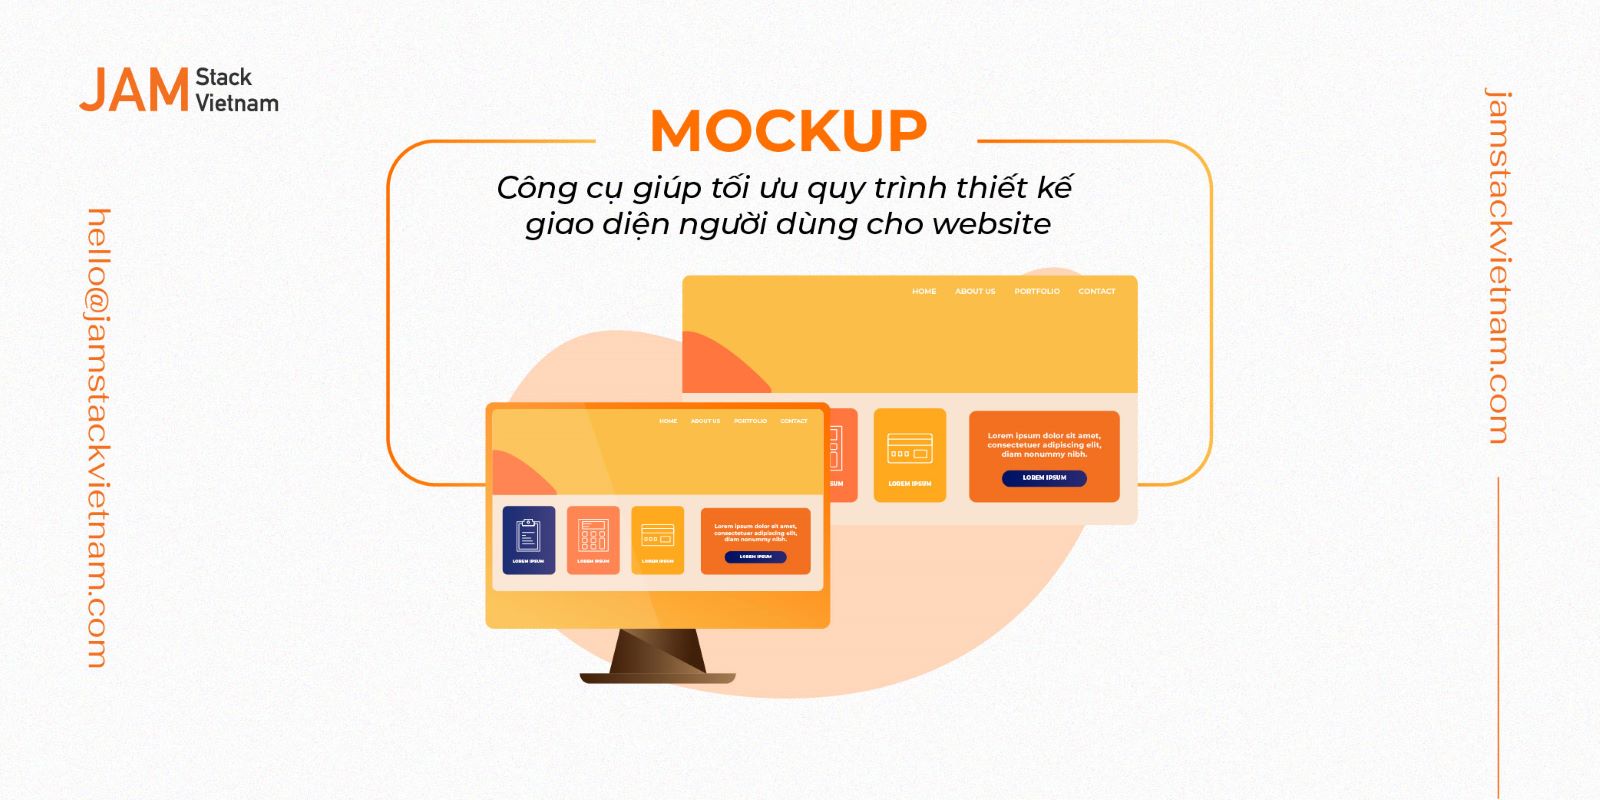 Mockup - Công cụ giúp tối ưu quy trình thiết kế giao diện người dùng cho website